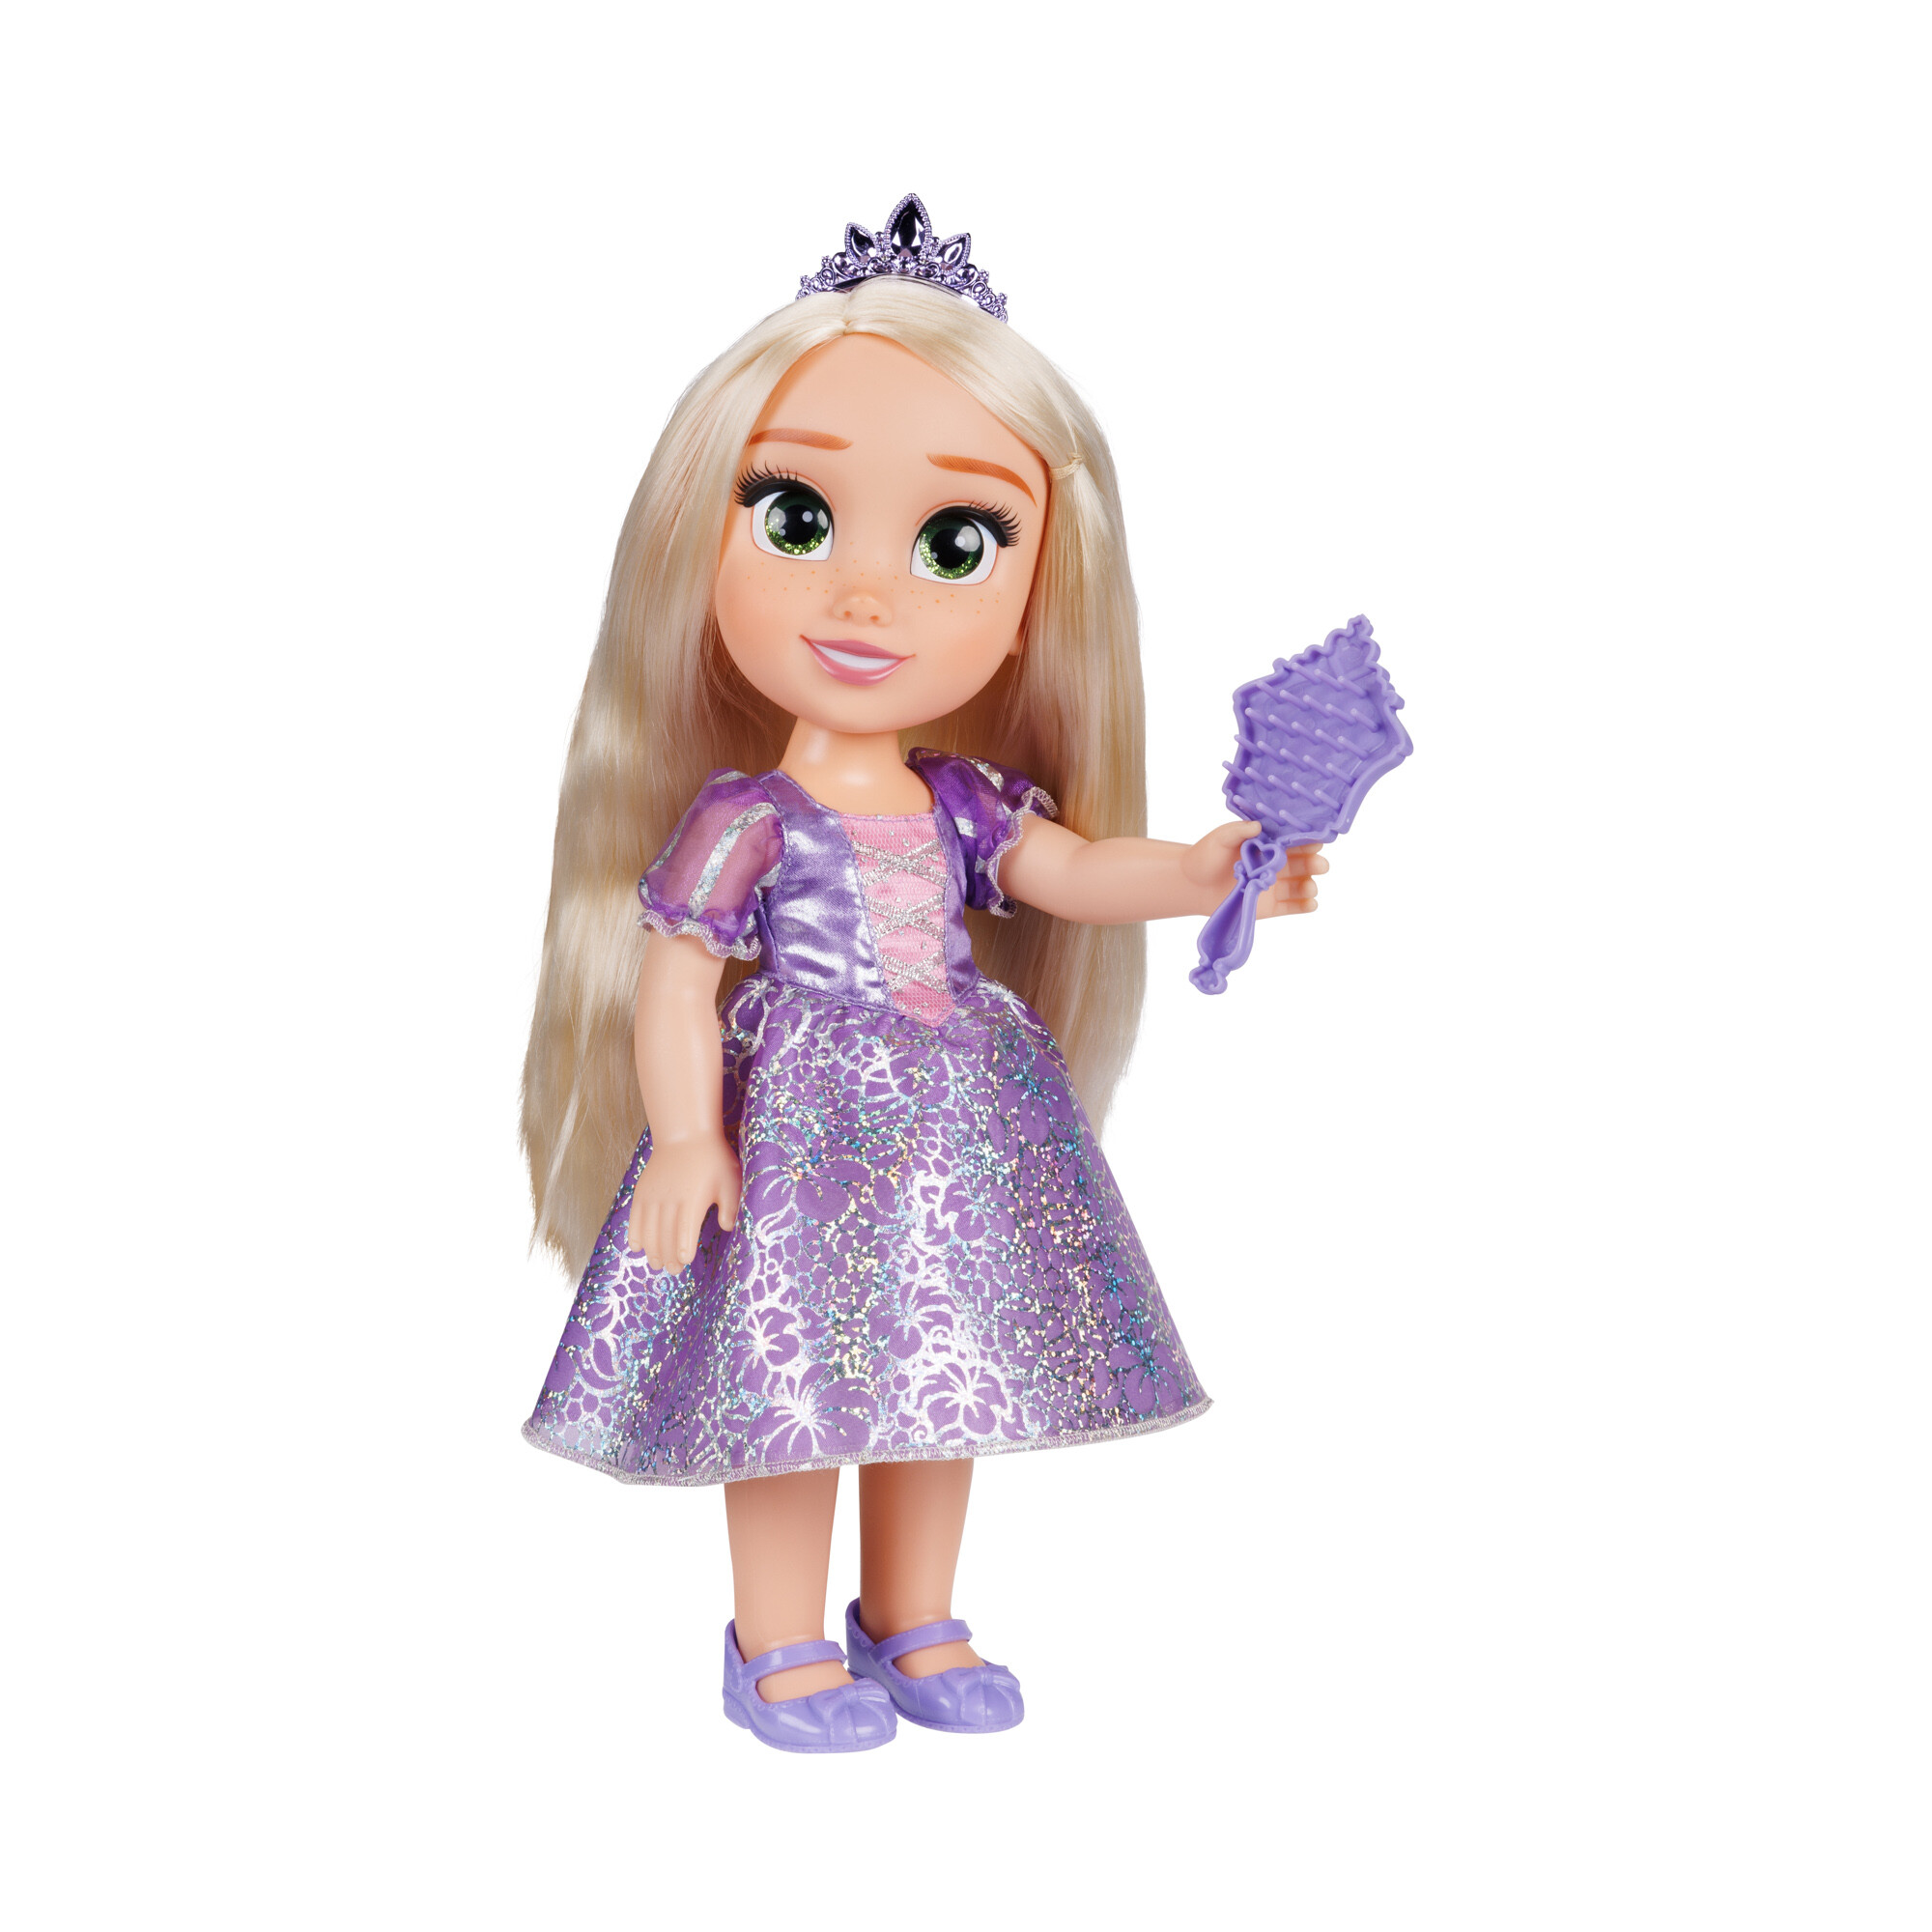 Disney princess bambola da 38 cm di rapunzel con occhi scintillanti! - DISNEY PRINCESS